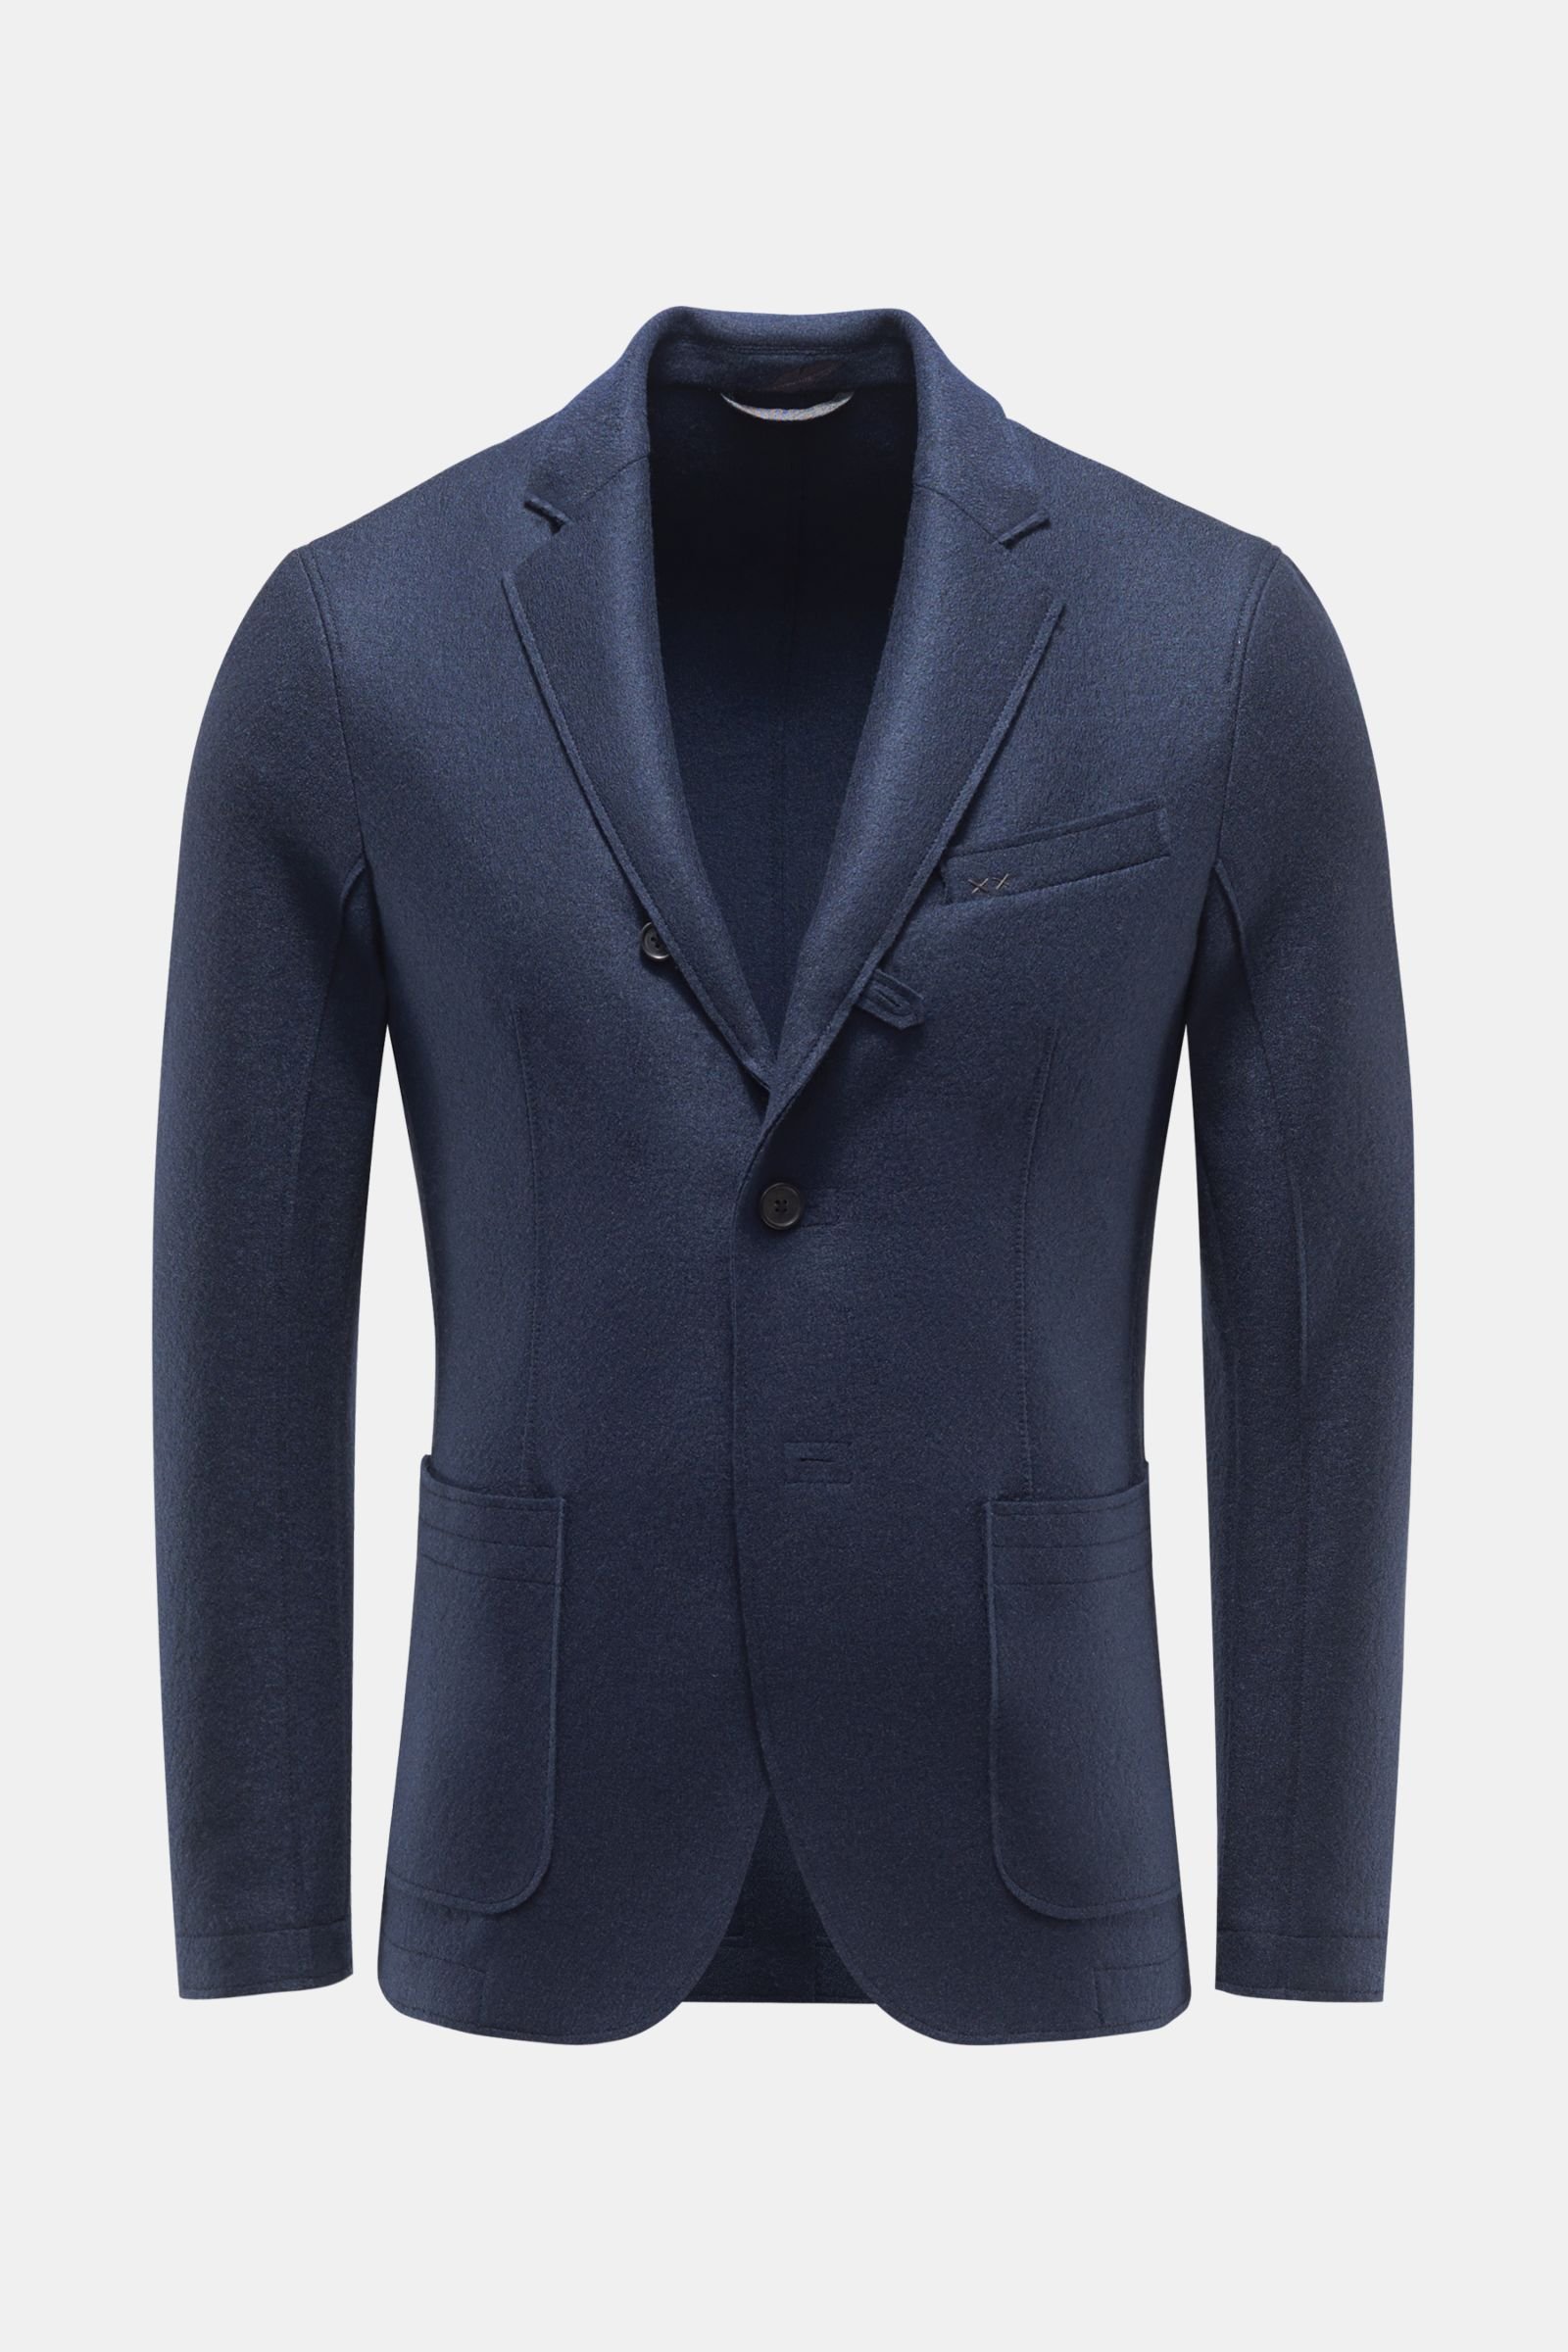 WEBER + WEBER smart-casual jacket 